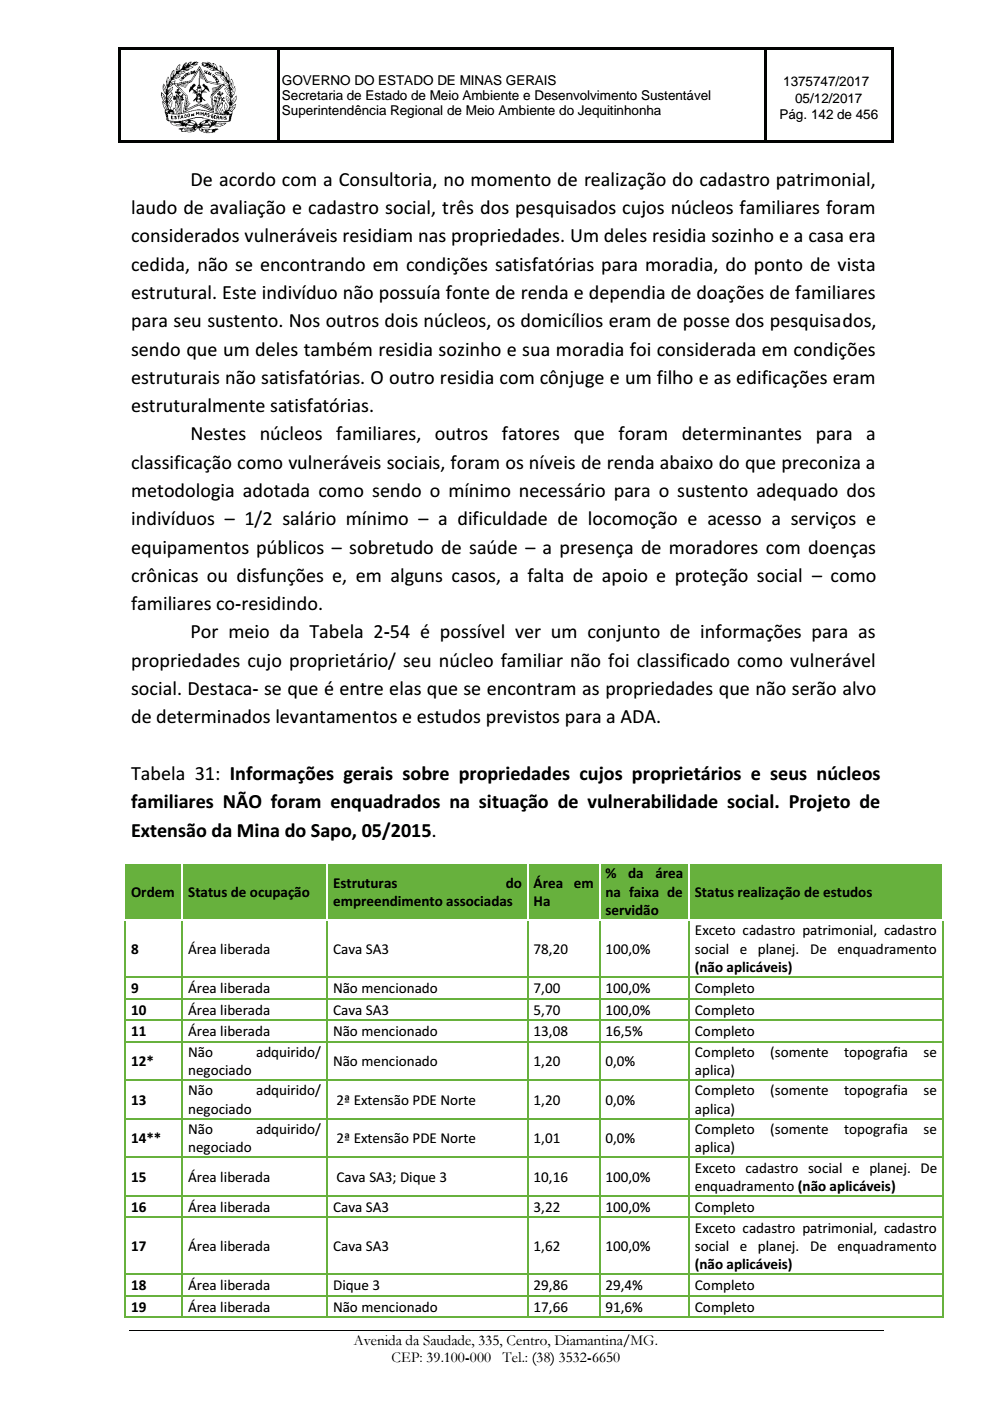 Page 142 from Parecer único da Secretaria de estado de Meio Ambiente e Desenvolvimento Sustentável (SEMAD)